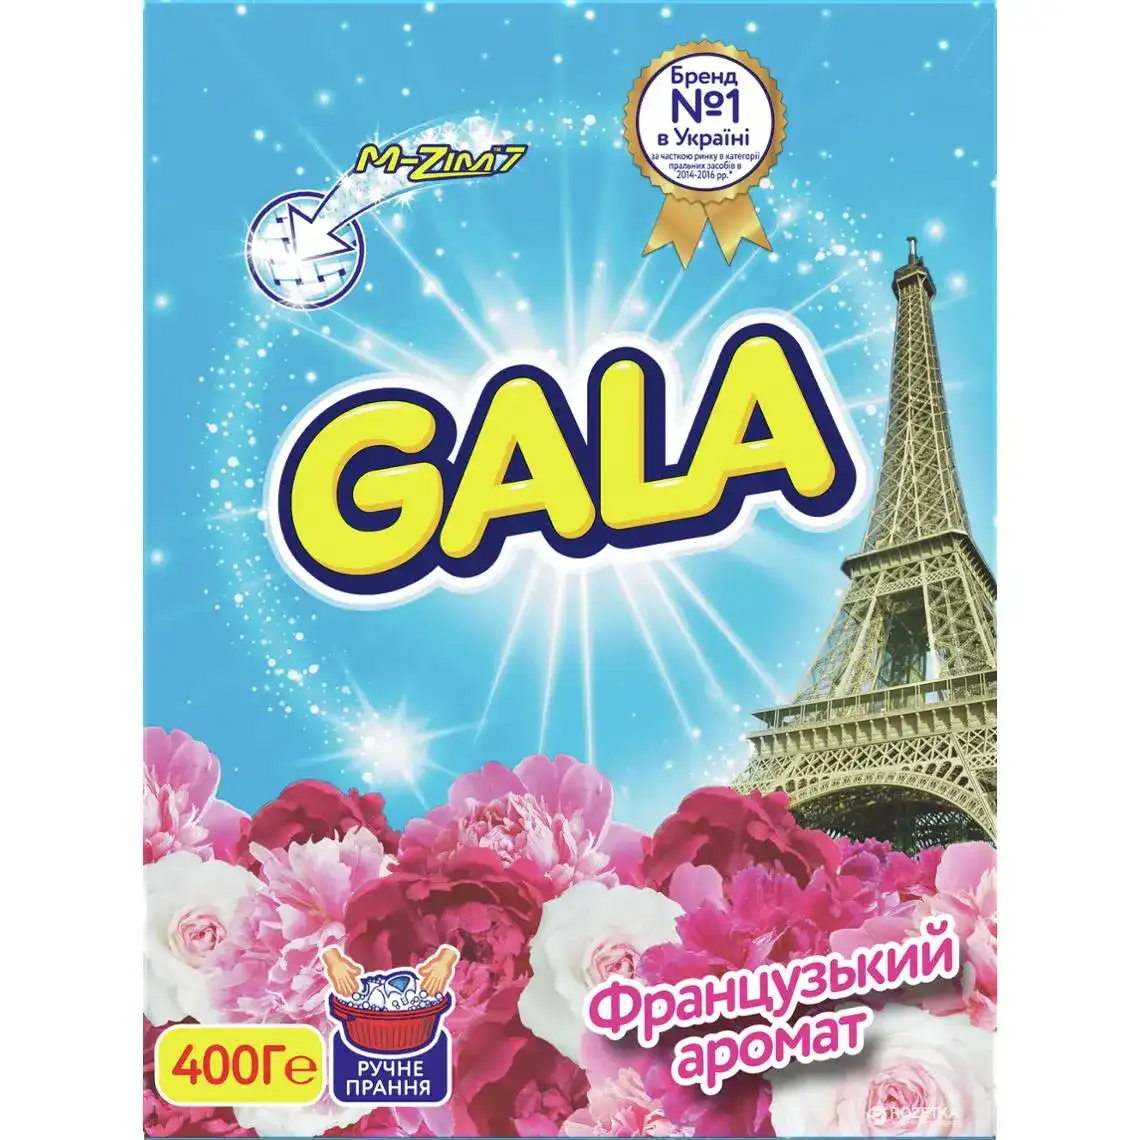 Пральний порошок Gala для ручного прання 3в1 Французький аромат 400 г